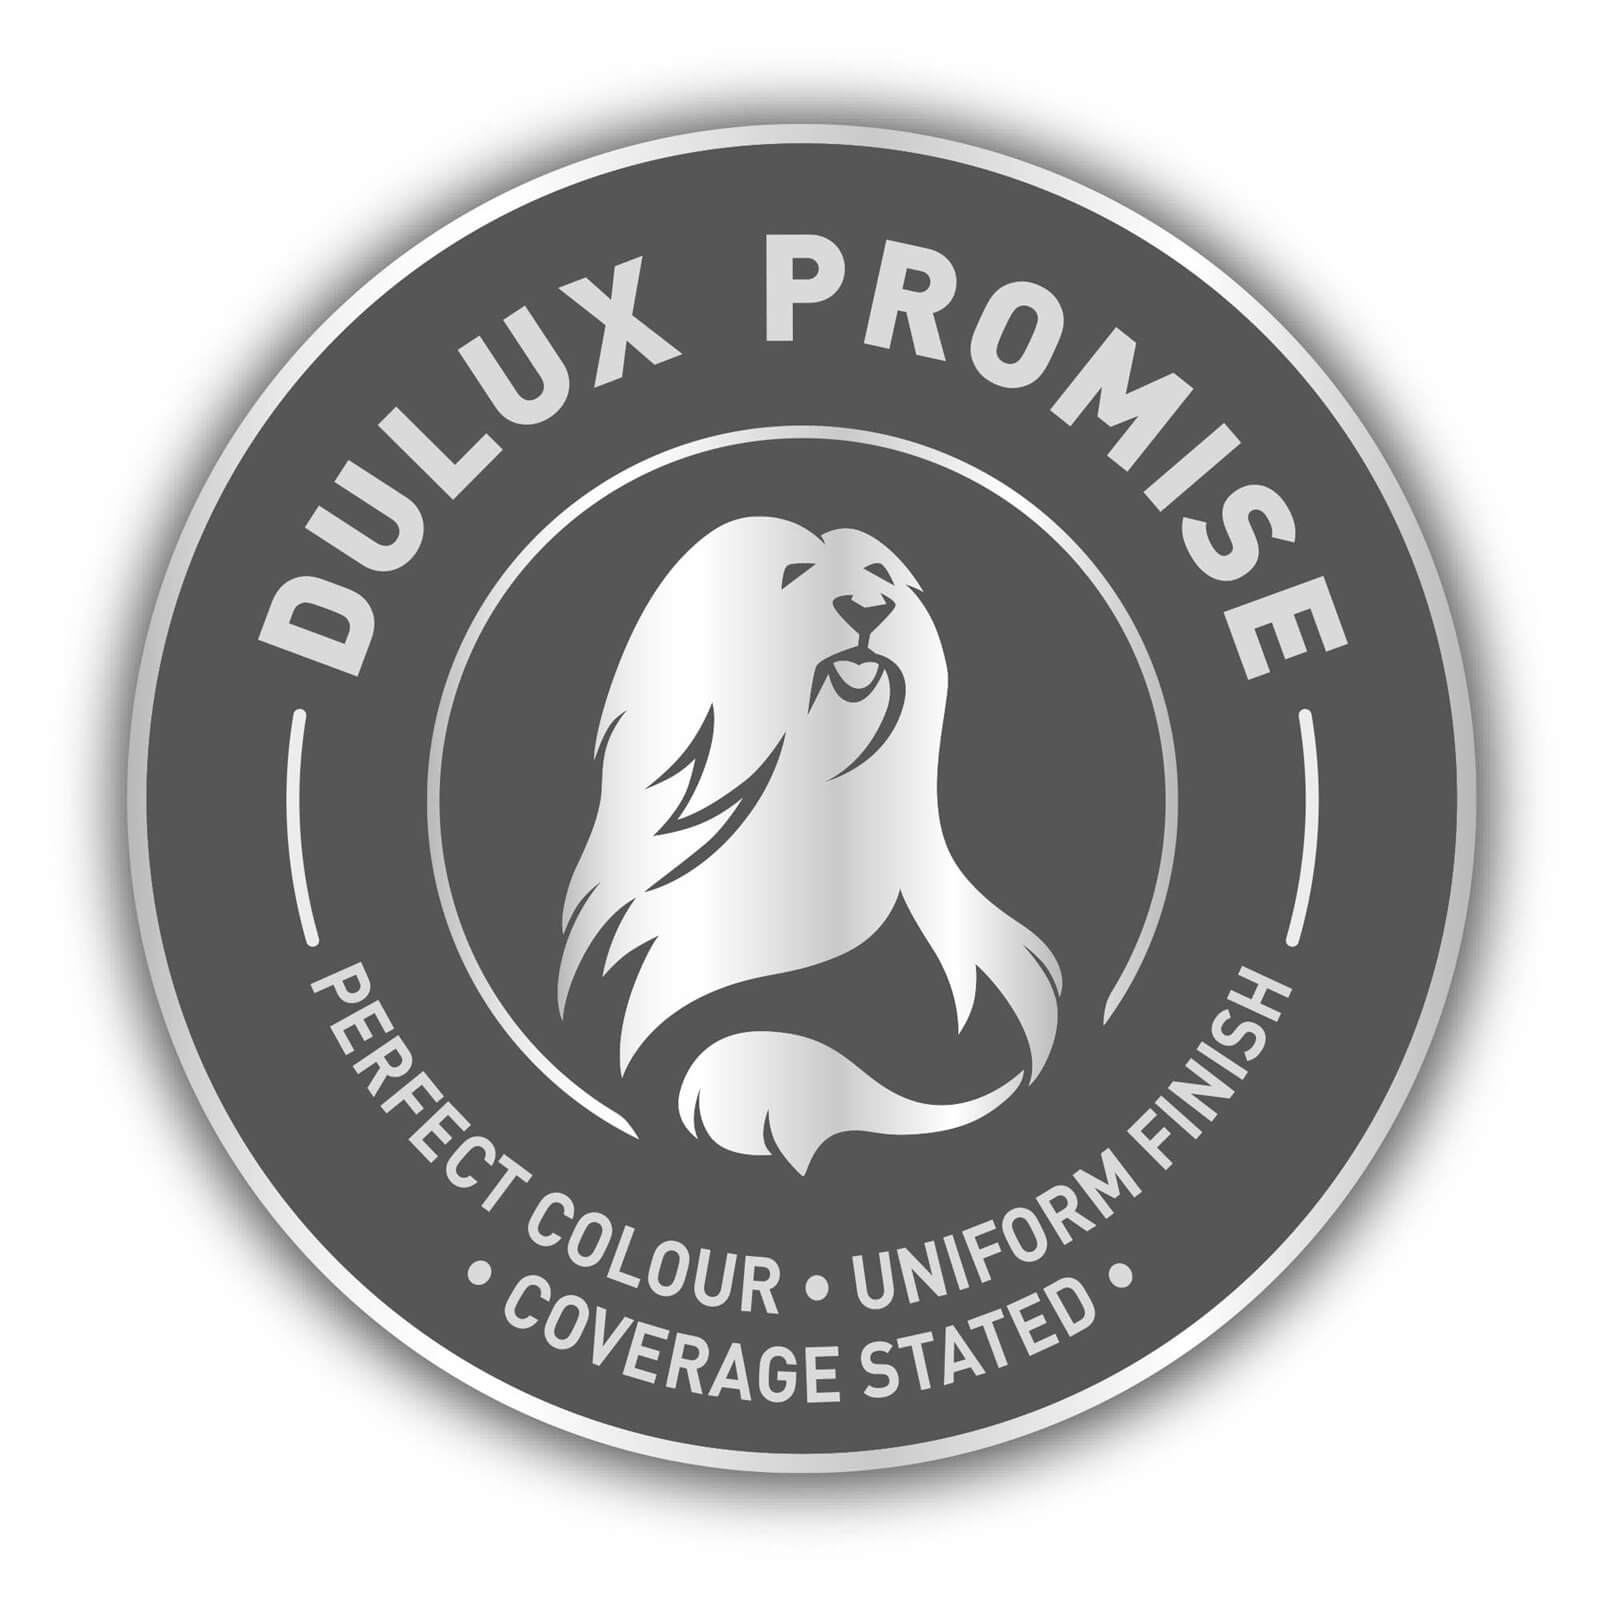 Dulux Matt Emulsion Paint Pure Brilliant White - 10L